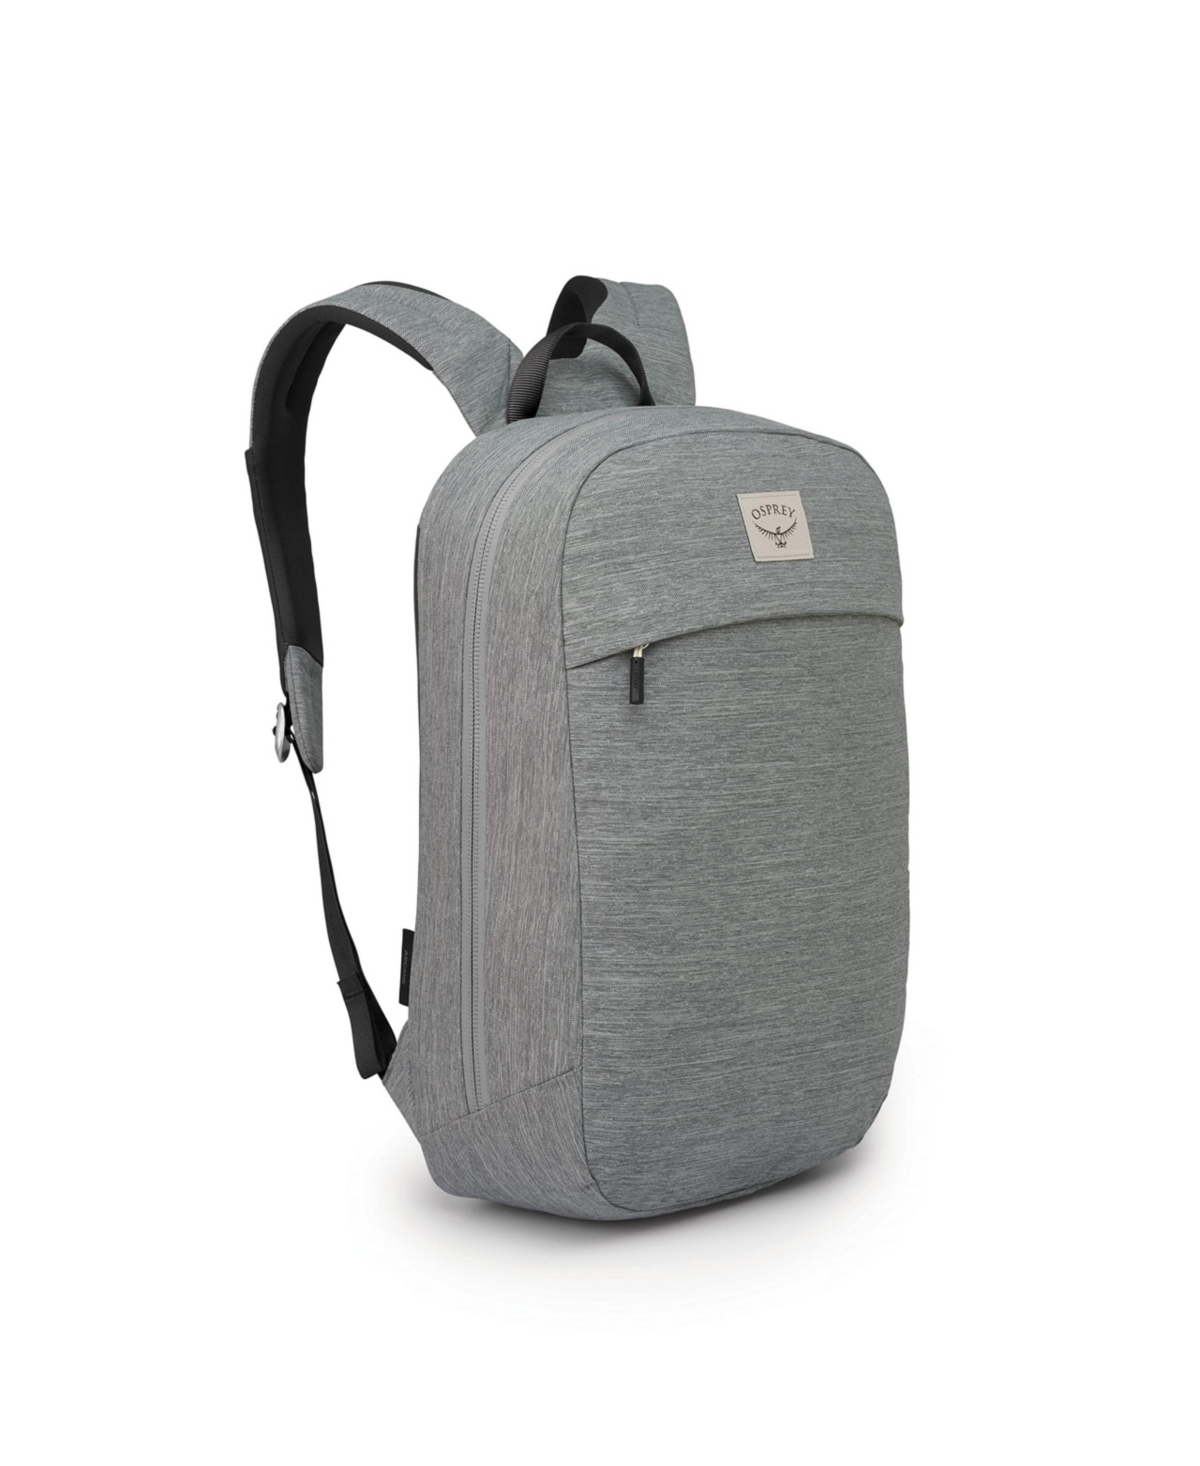 Arcane Large Day Backpack - Medium grey heather